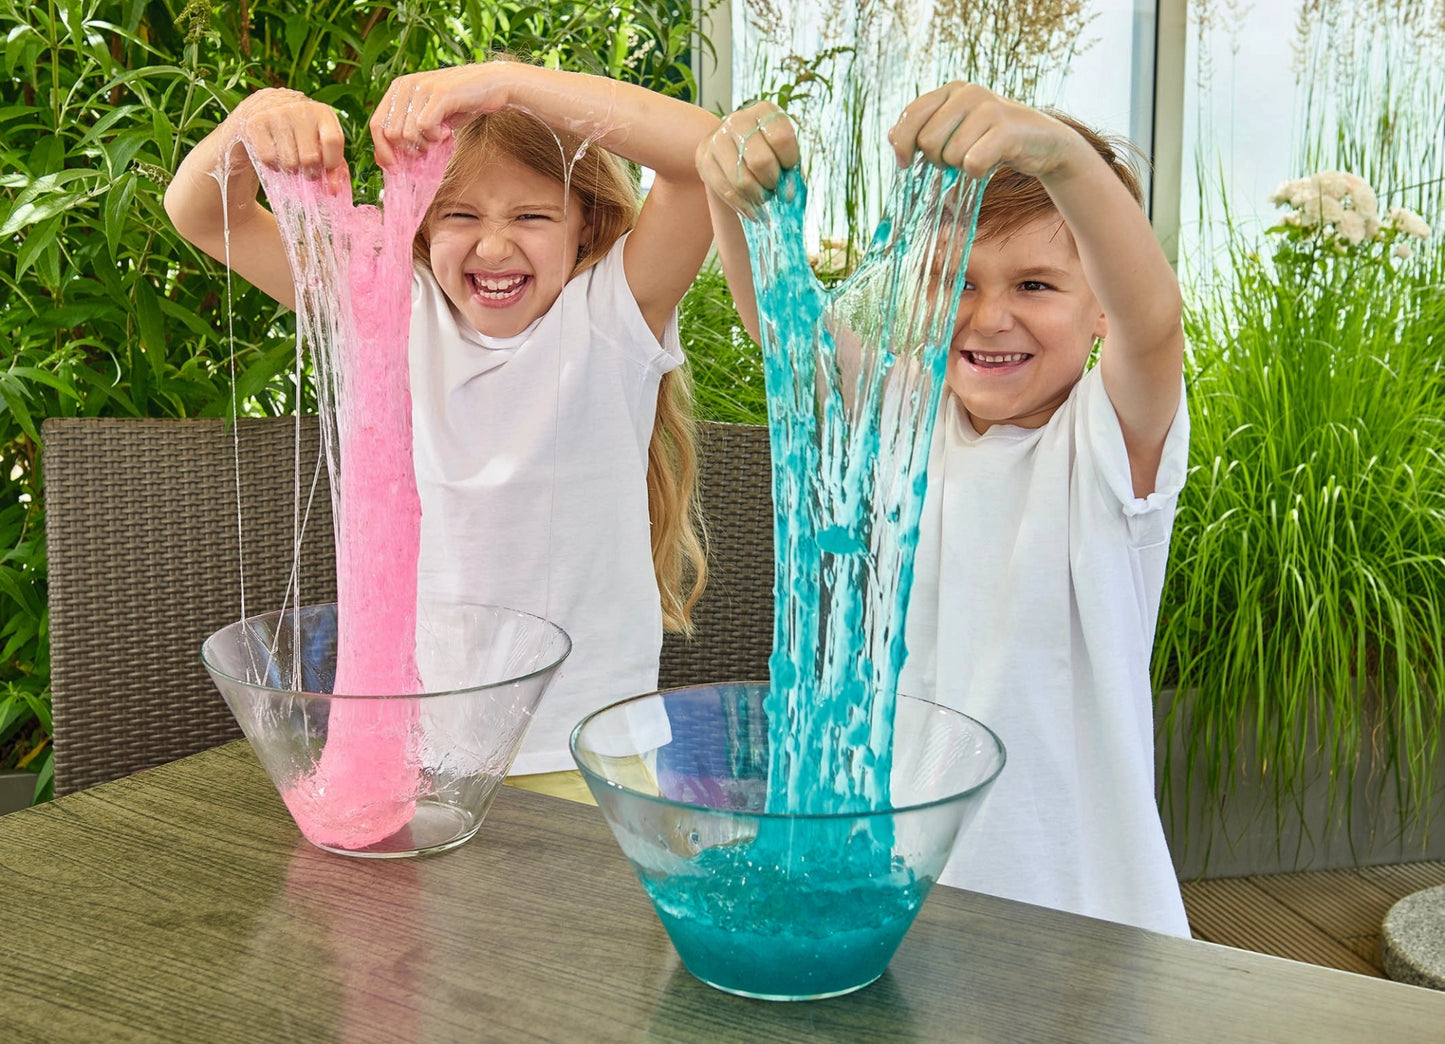 Zimpli Kids - Glitter Slime Play - Sensorische Slijm Biologisch afbreekbaar 50g - Playlaan